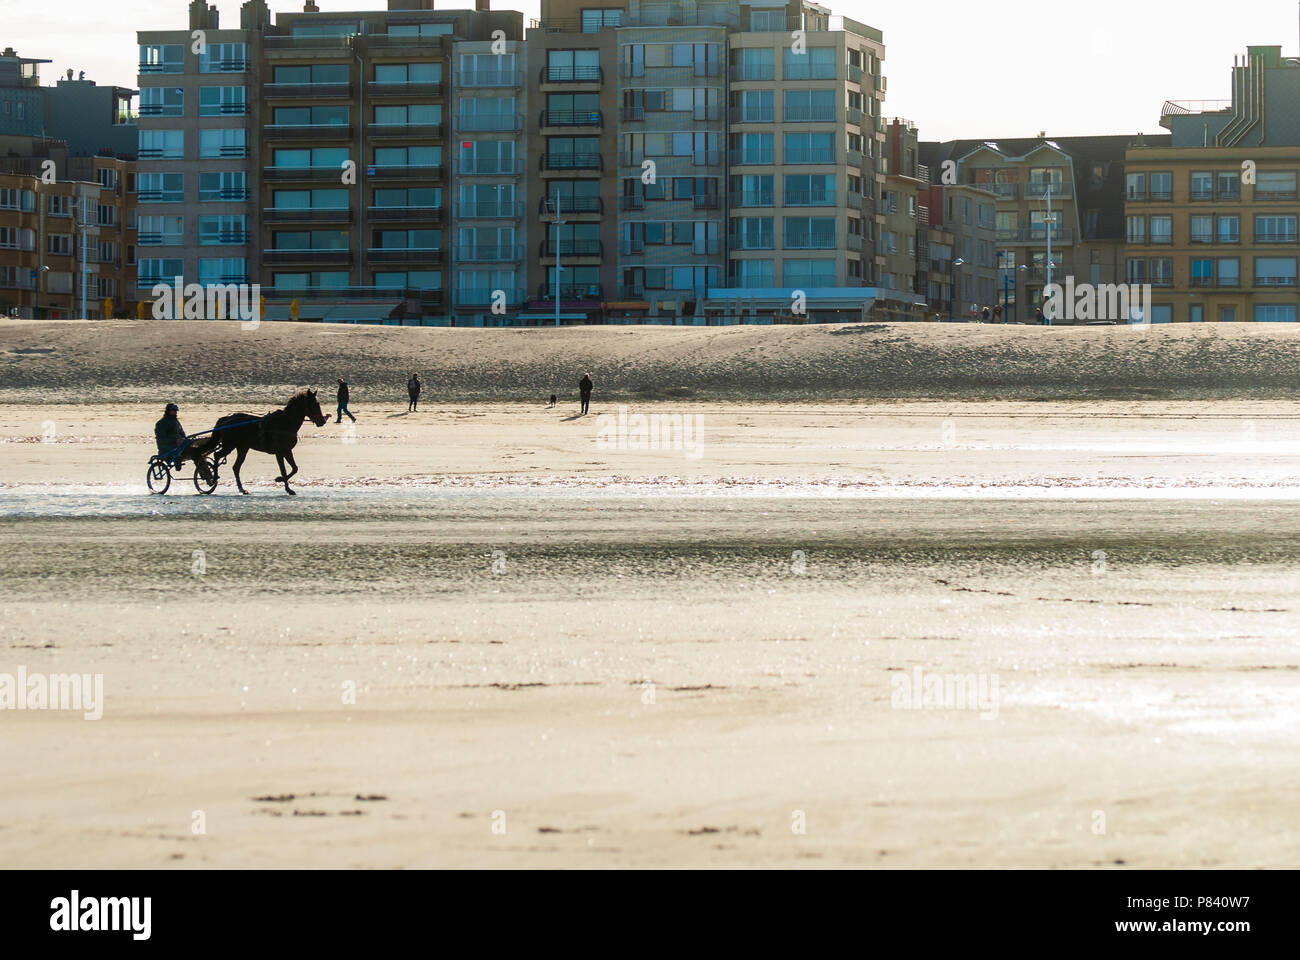 La formazione di un cavallo da corsa sulla spiaggia in autunno con alcuni edifici in background Foto Stock